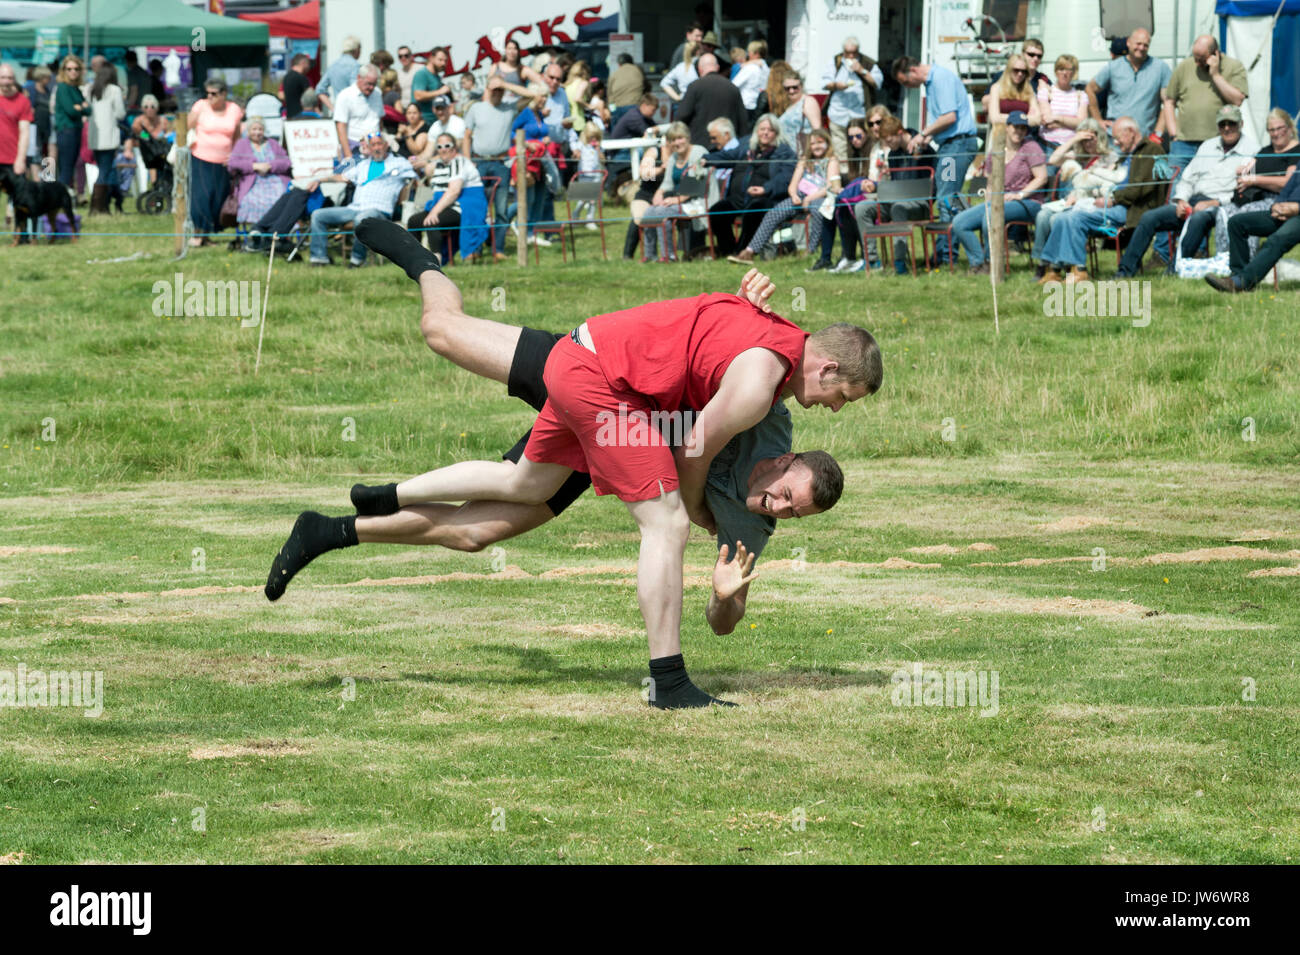 Appleby mostrano, Cumbria, Regno Unito. 10 Ago, 2017. Cumberland wrestling a Appleby annuale mostra, Cumbria, Regno Unito, 10 agosto 2017. Credito: John Bentley/Alamy Live News Foto Stock